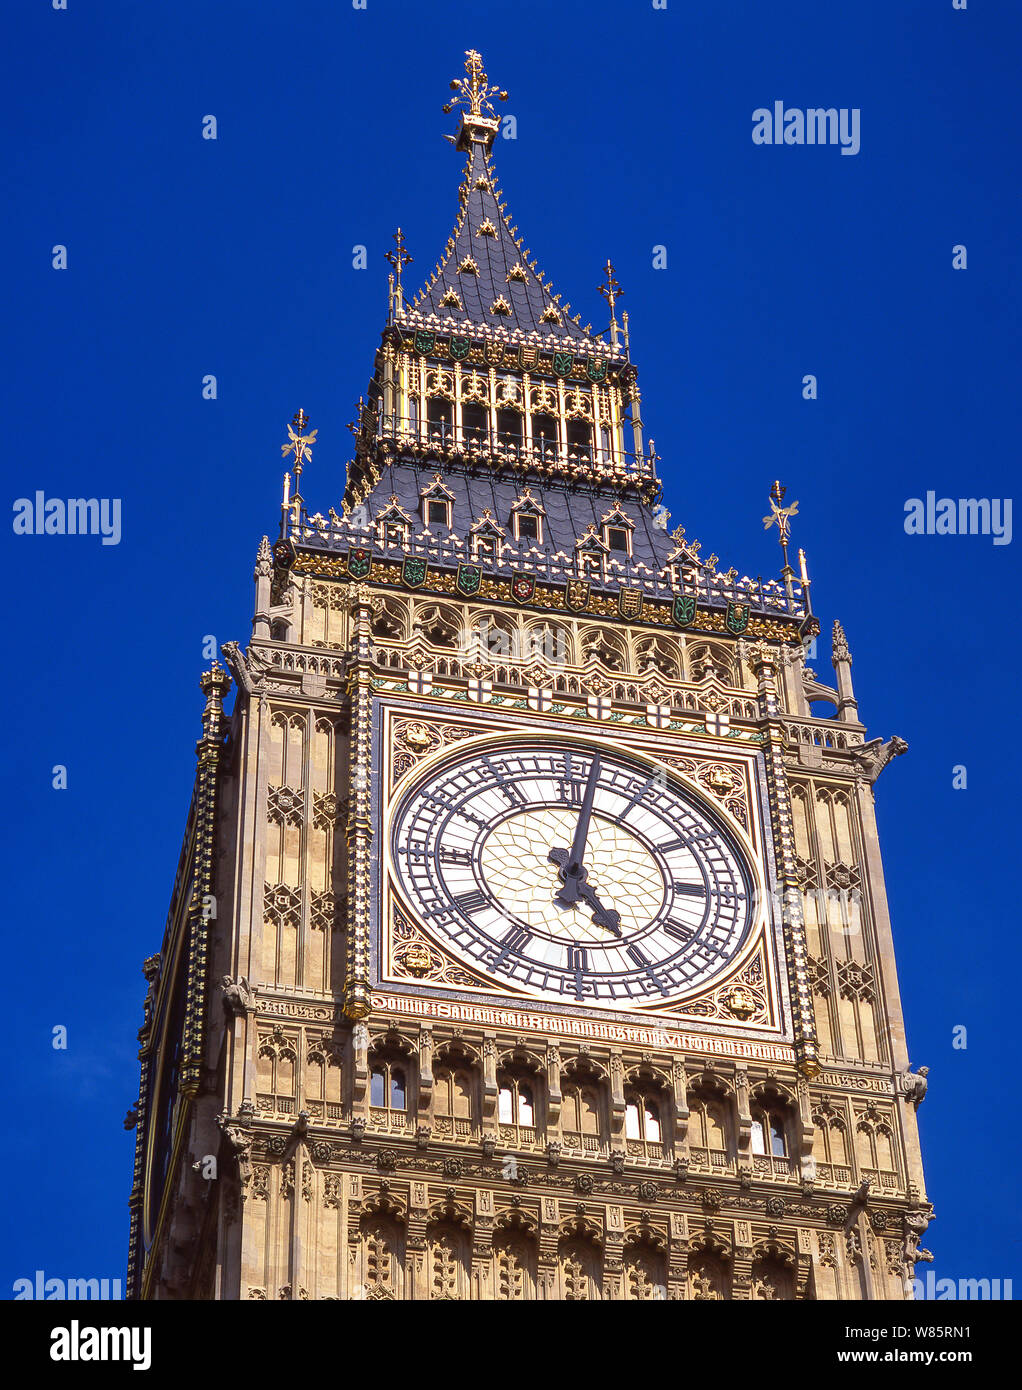 Big Ben und das Elizabeth Tower von Westminster Bridge, Palast von Westminster (Parlament), Westminster, London, England, Vereinigtes Königreich Stockfoto